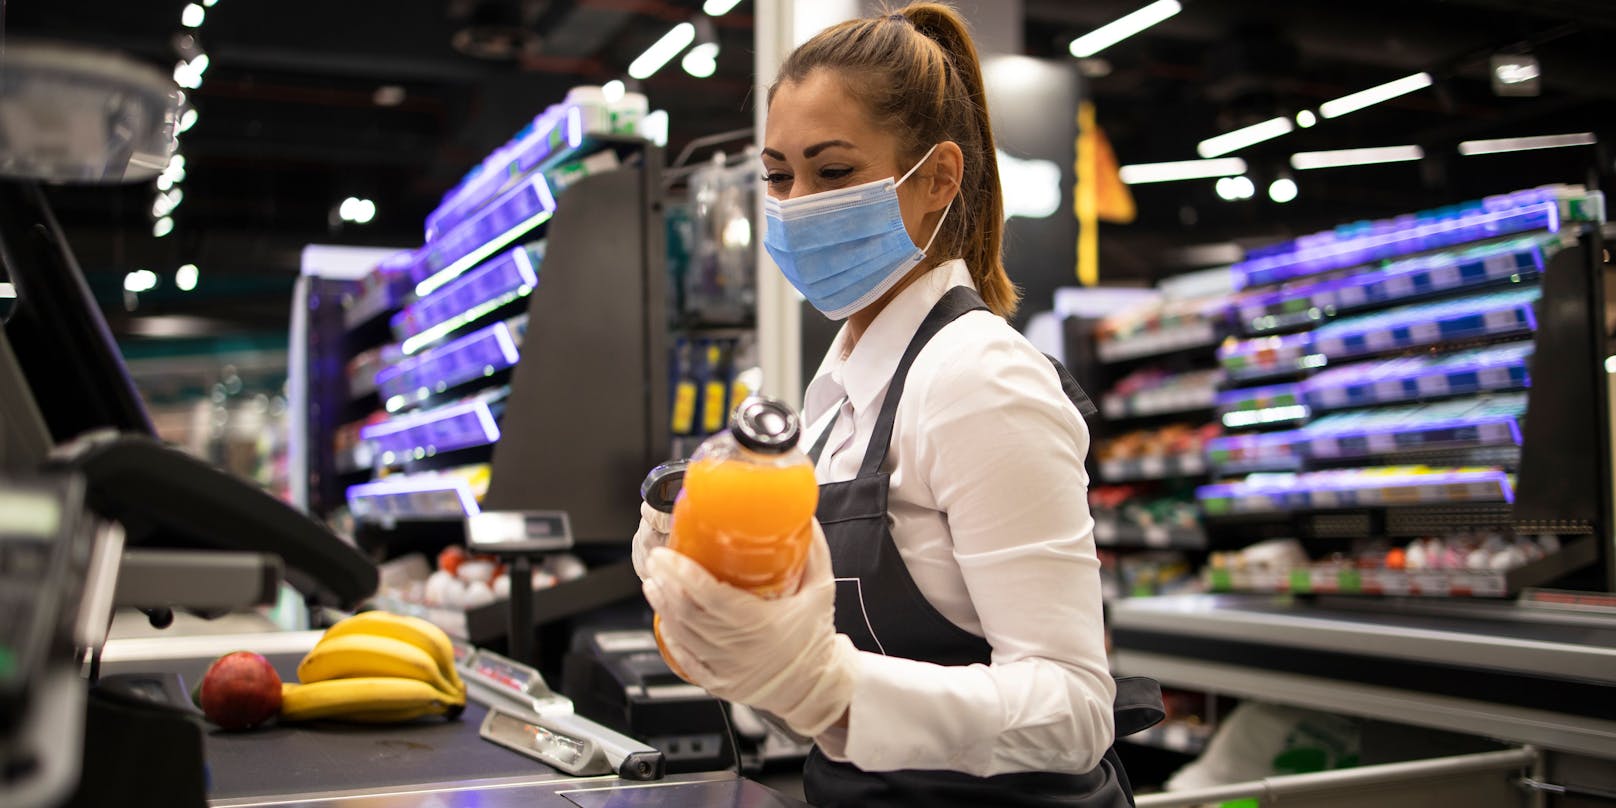 Überlastung, Personalmangel und mangelnde Wertschätzung machen den Supermarkt-Mitarbeiter schwer zu schaffen.